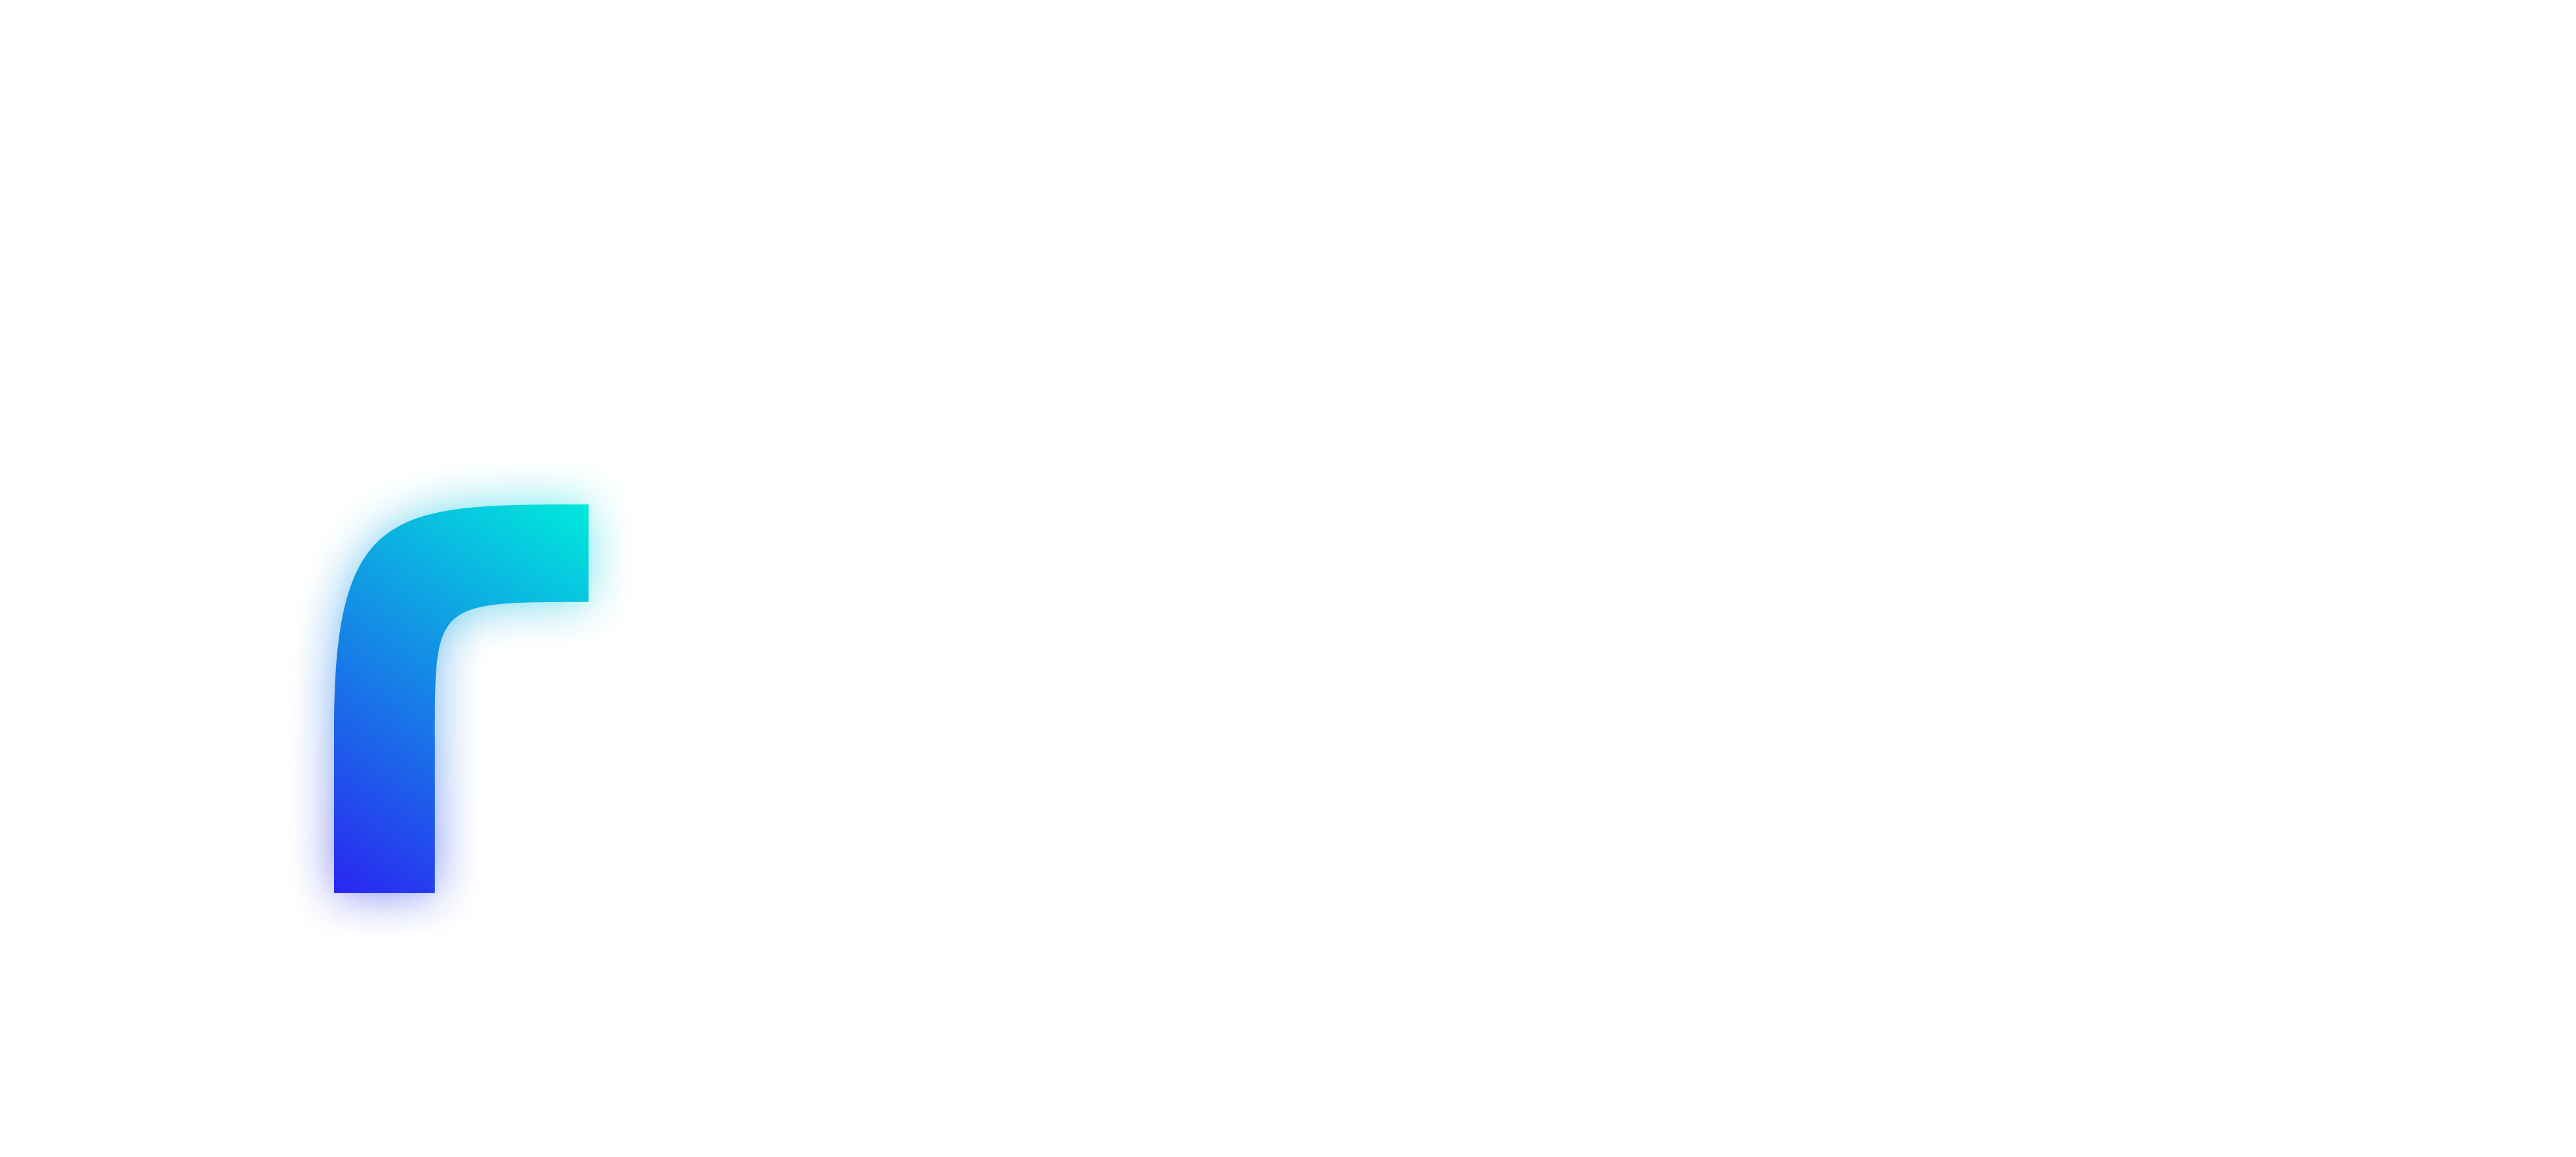 F for Femme